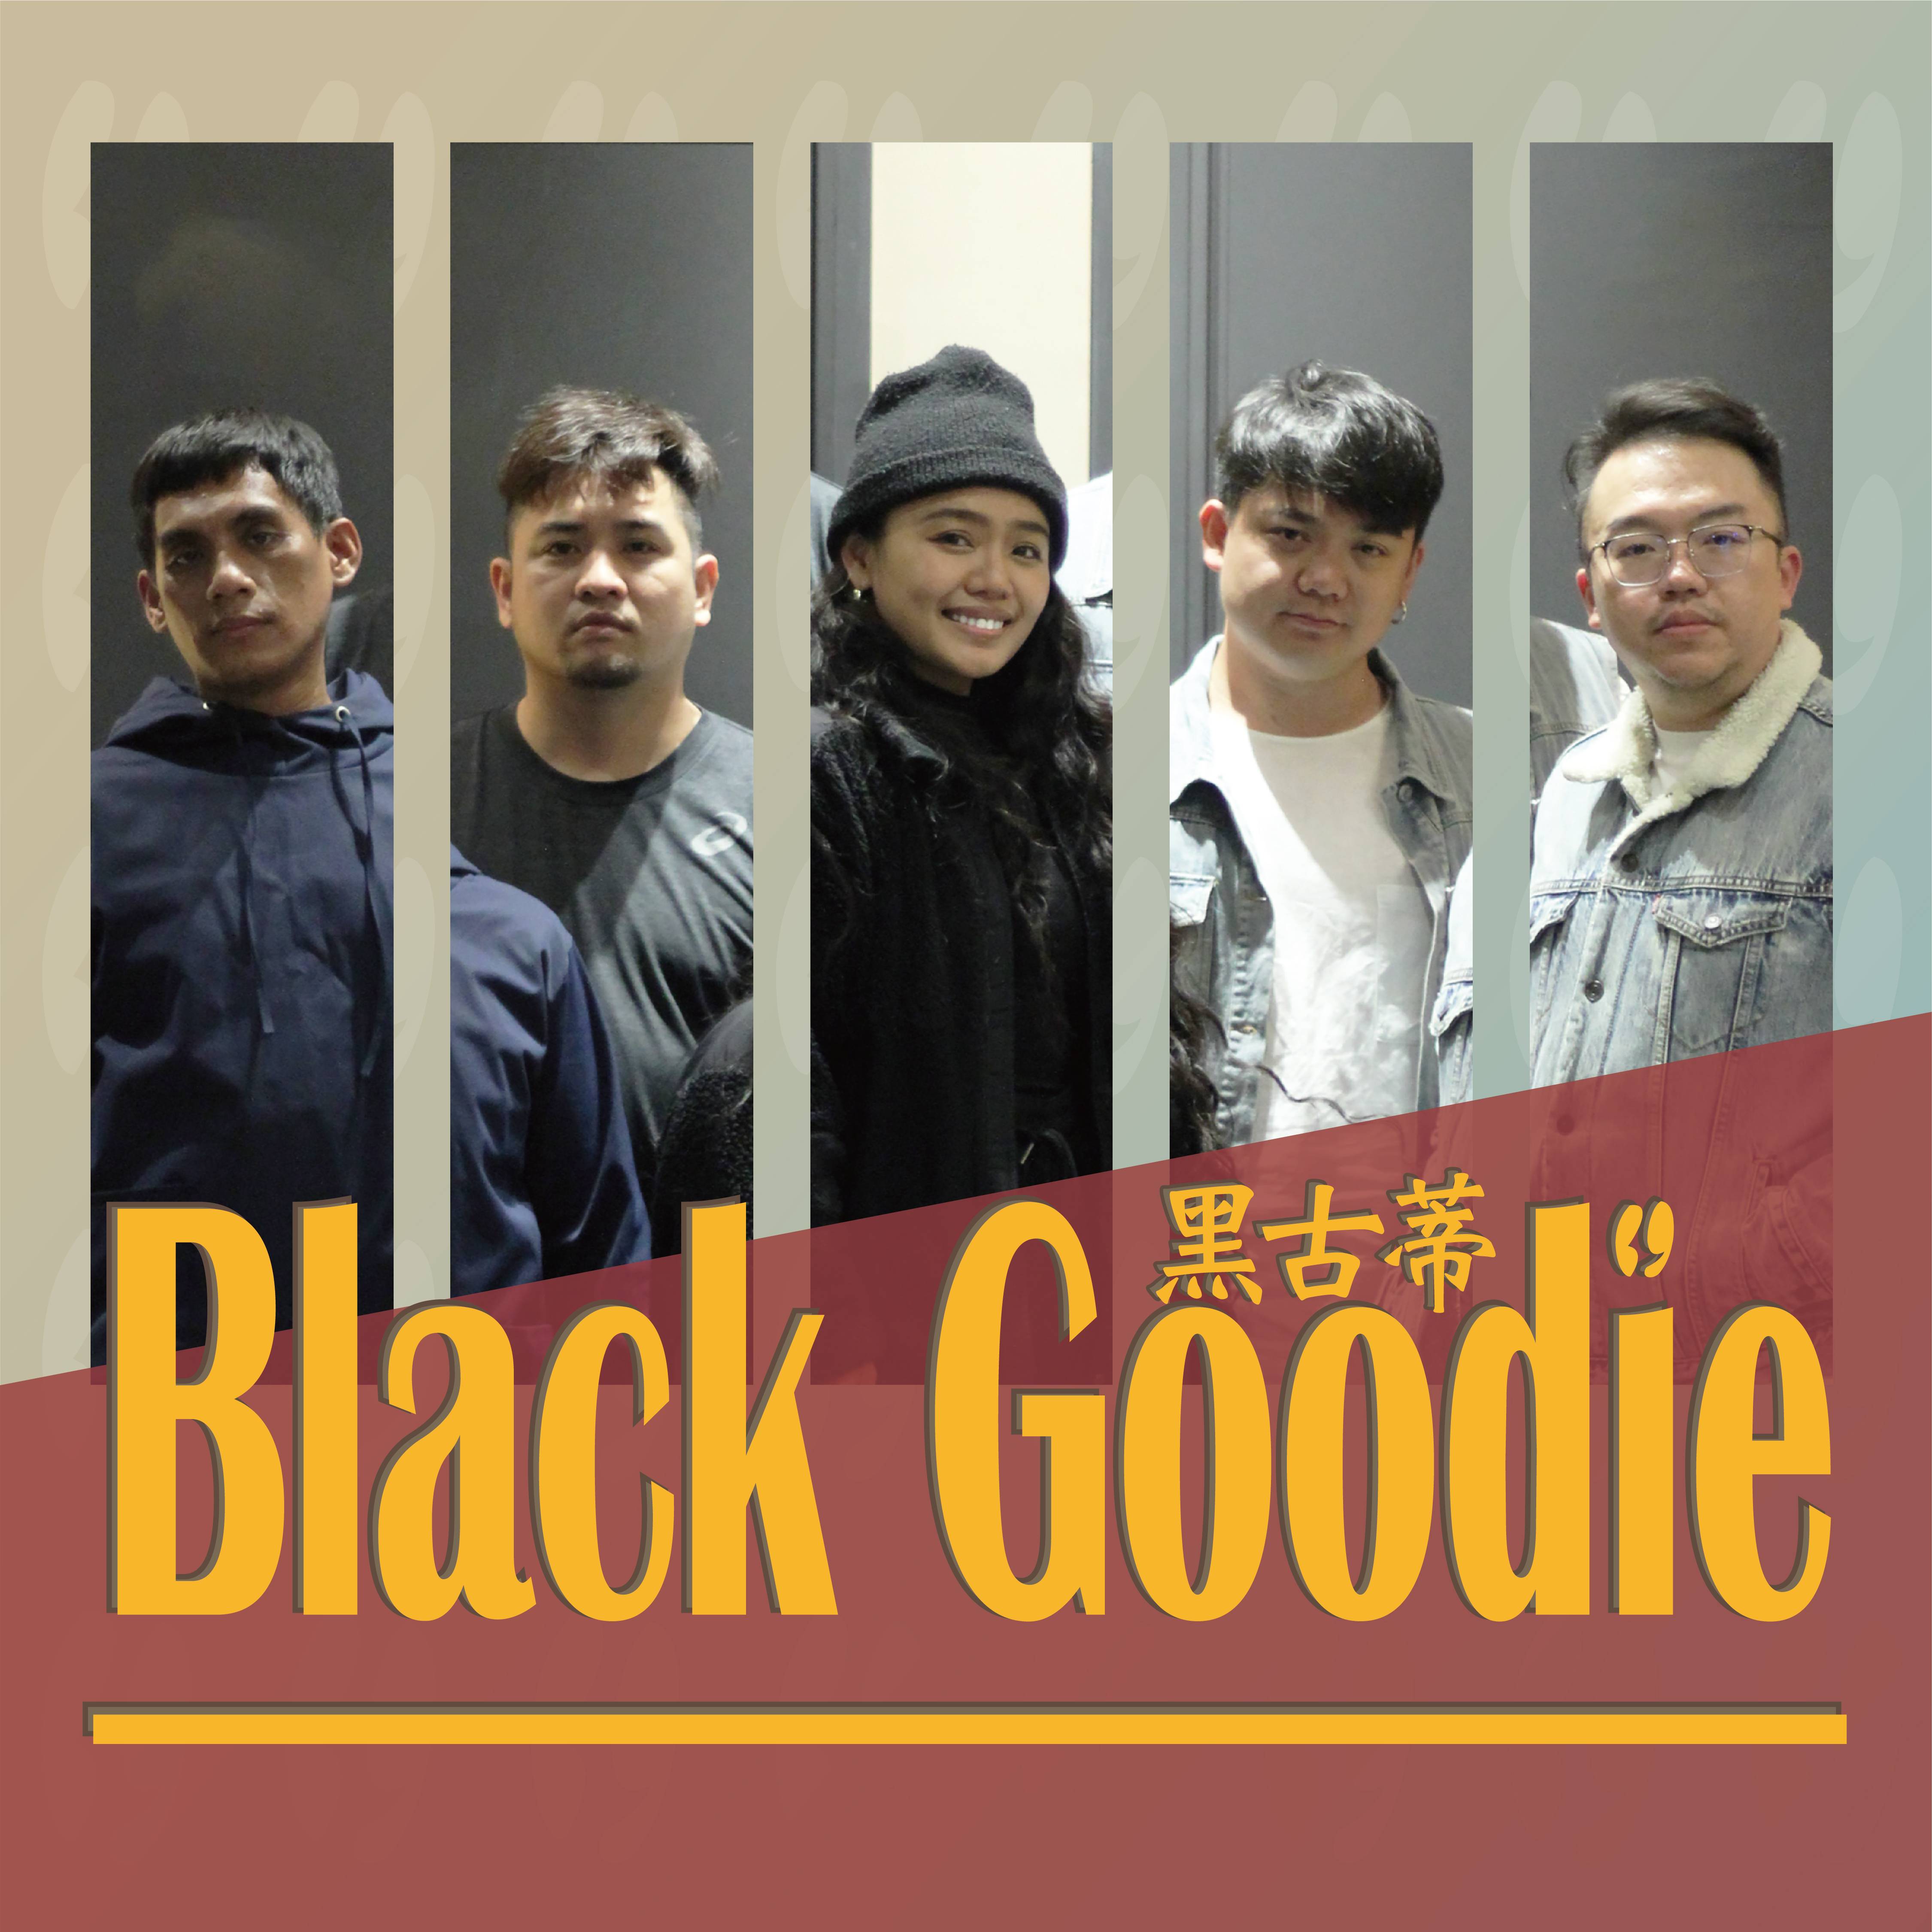 Black Goodie